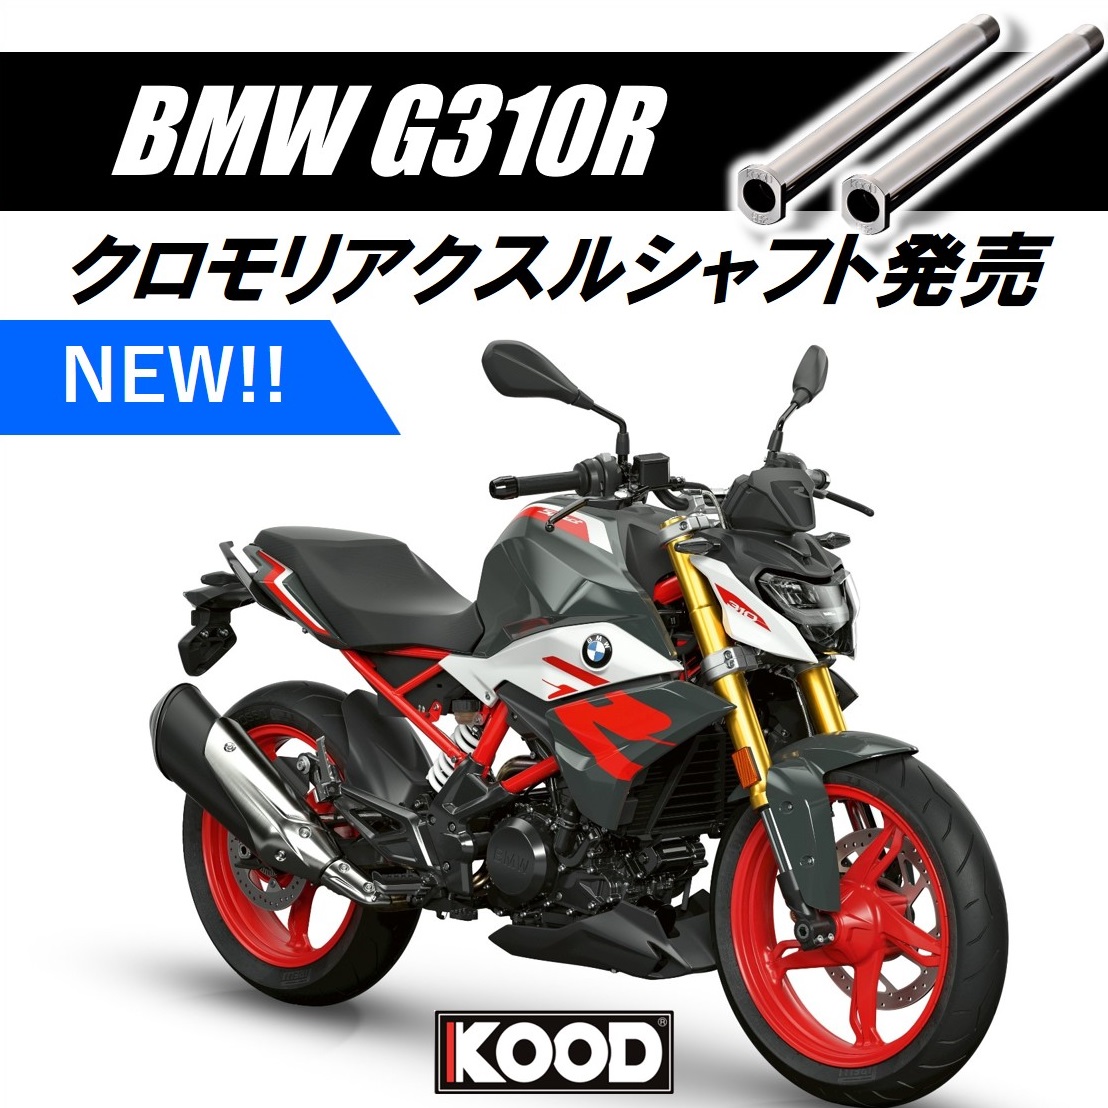 #G310R 用アクスルシャフト発売中！
kood.easy-myshop.jp/c-item-detail?…

#BMWモトラッド #モトラッド #G310GS #バイク #バイク好きな人と繋がりたい #バイク好きと繋がりたい #バイク乗りと繋がりたい #バイクが好きだ #バイクライフ #バイクのある生活 #バイクメンテナンス #バイクカスタム #バイクのある風景